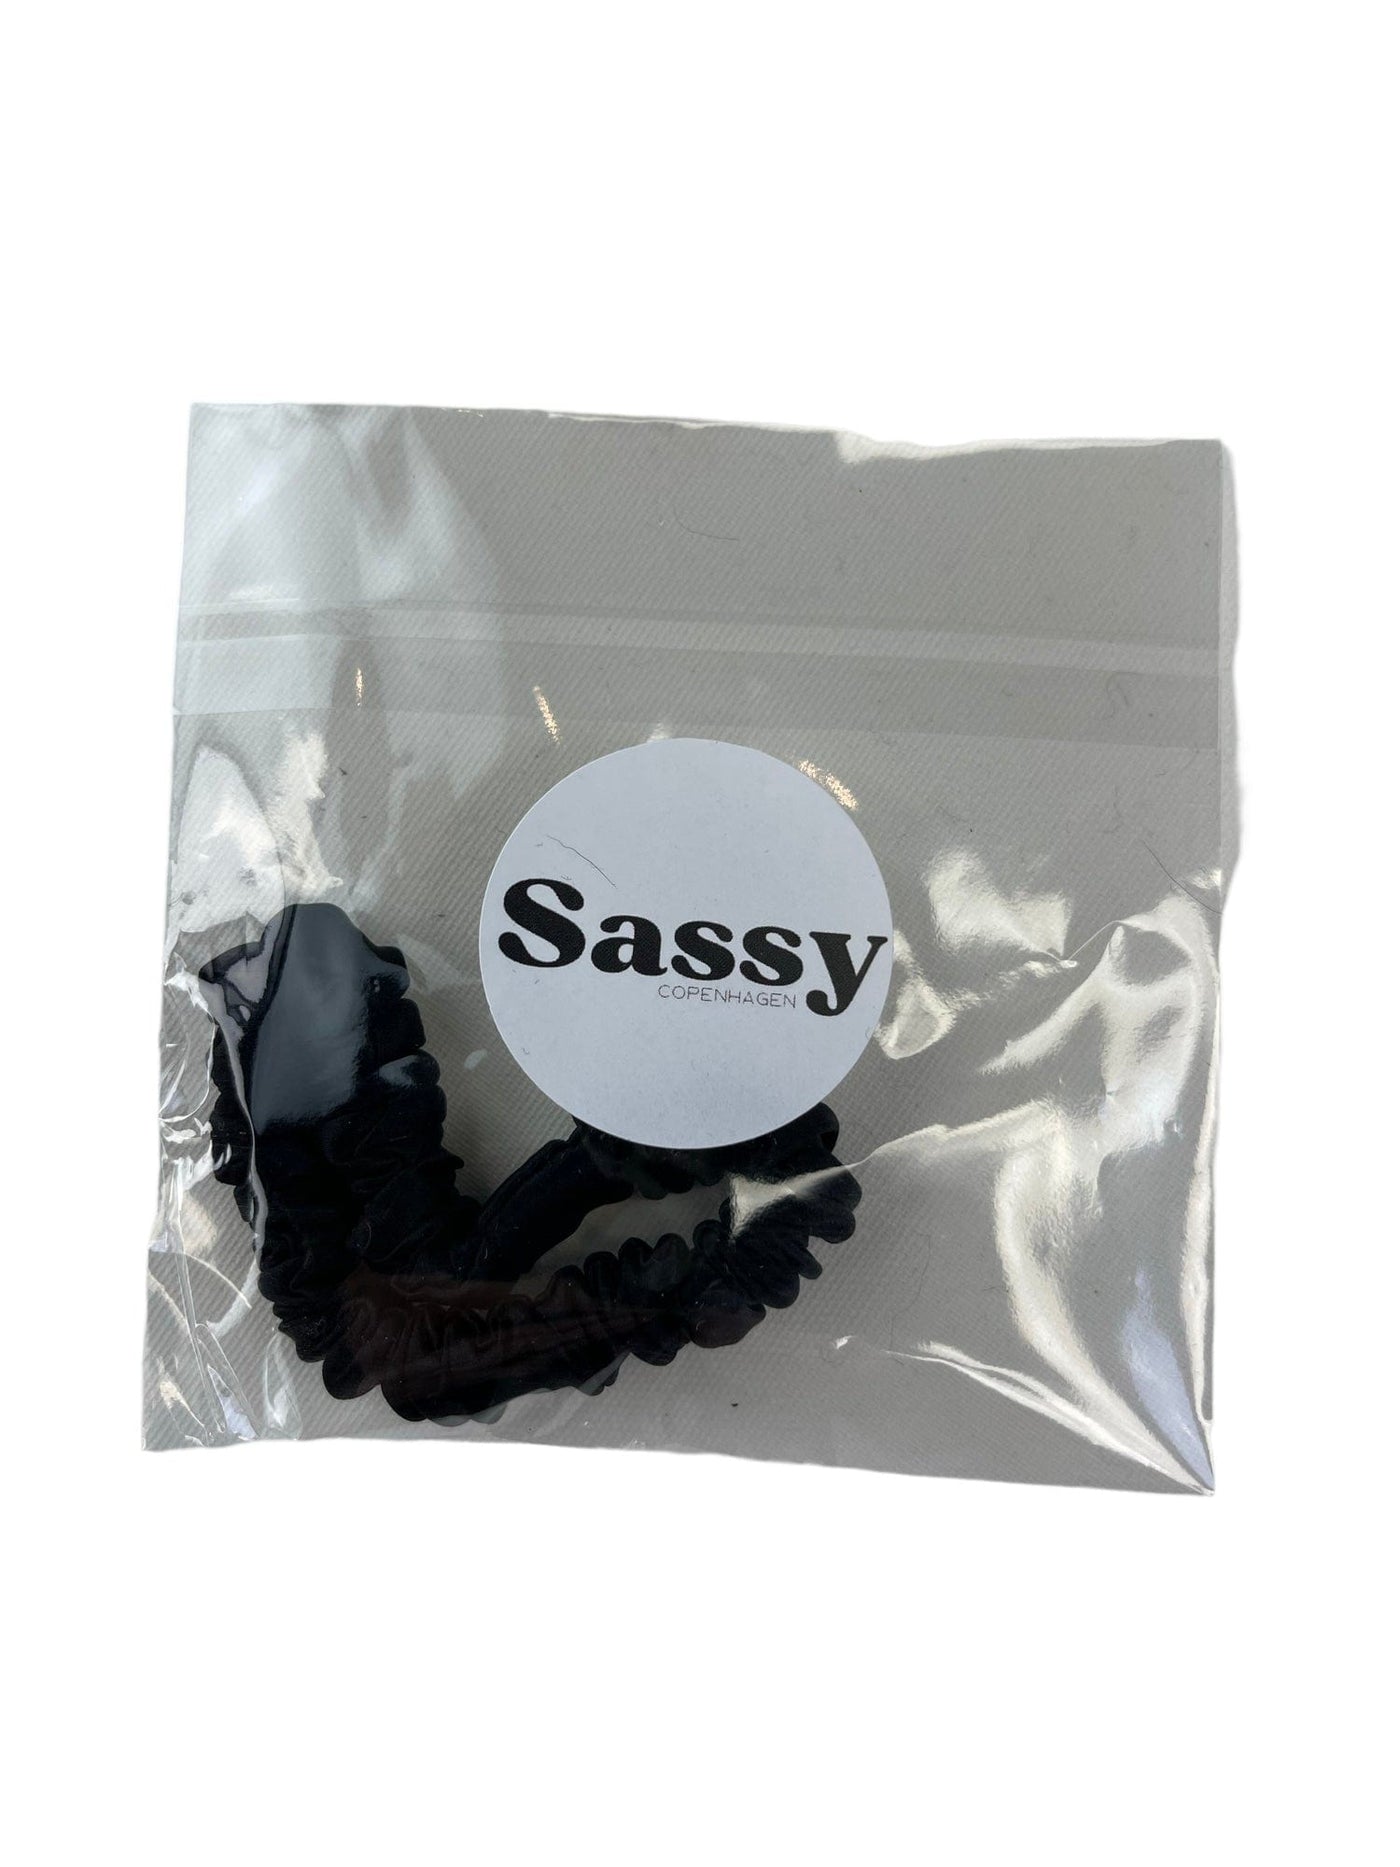 Sassy Copenhagen Accessories Sassy Copenhagen - 100% Silke hårelastik - SSSisse sort